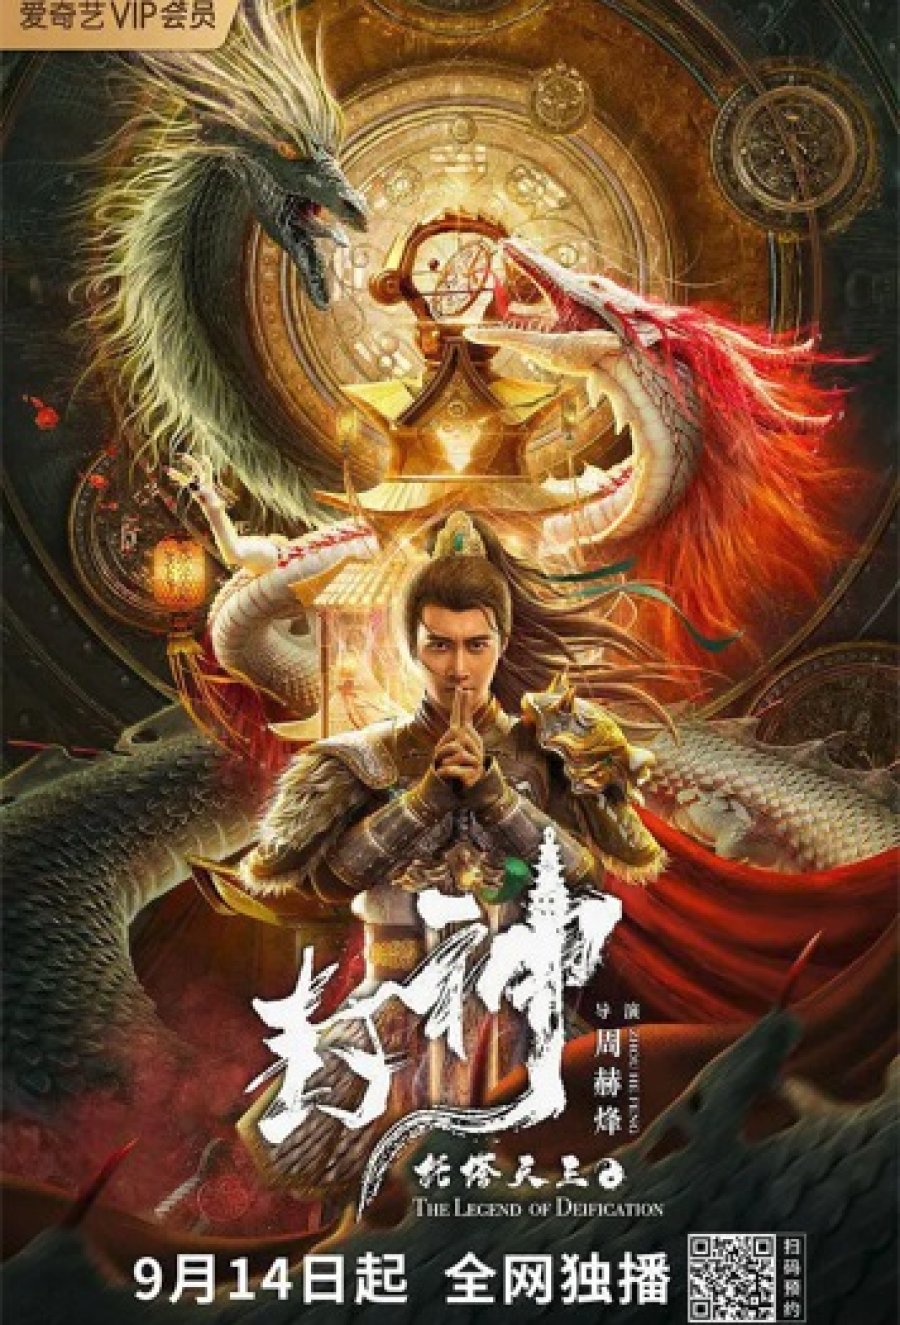 ดูหนังออนไลน์ฟรี THE LEGEND OF DEIFICATION-King Li Jing (2021) ตำนานราชาแห่งสวรรค์-กำเหนิดหลี่จิ้งทูตเจดีย์สวรรค์ หนังมาสเตอร์ หนังเต็มเรื่อง ดูหนังฟรีออนไลน์ ดูหนังออนไลน์ หนังออนไลน์ ดูหนังใหม่ หนังพากย์ไทย หนังซับไทย ดูฟรีHD